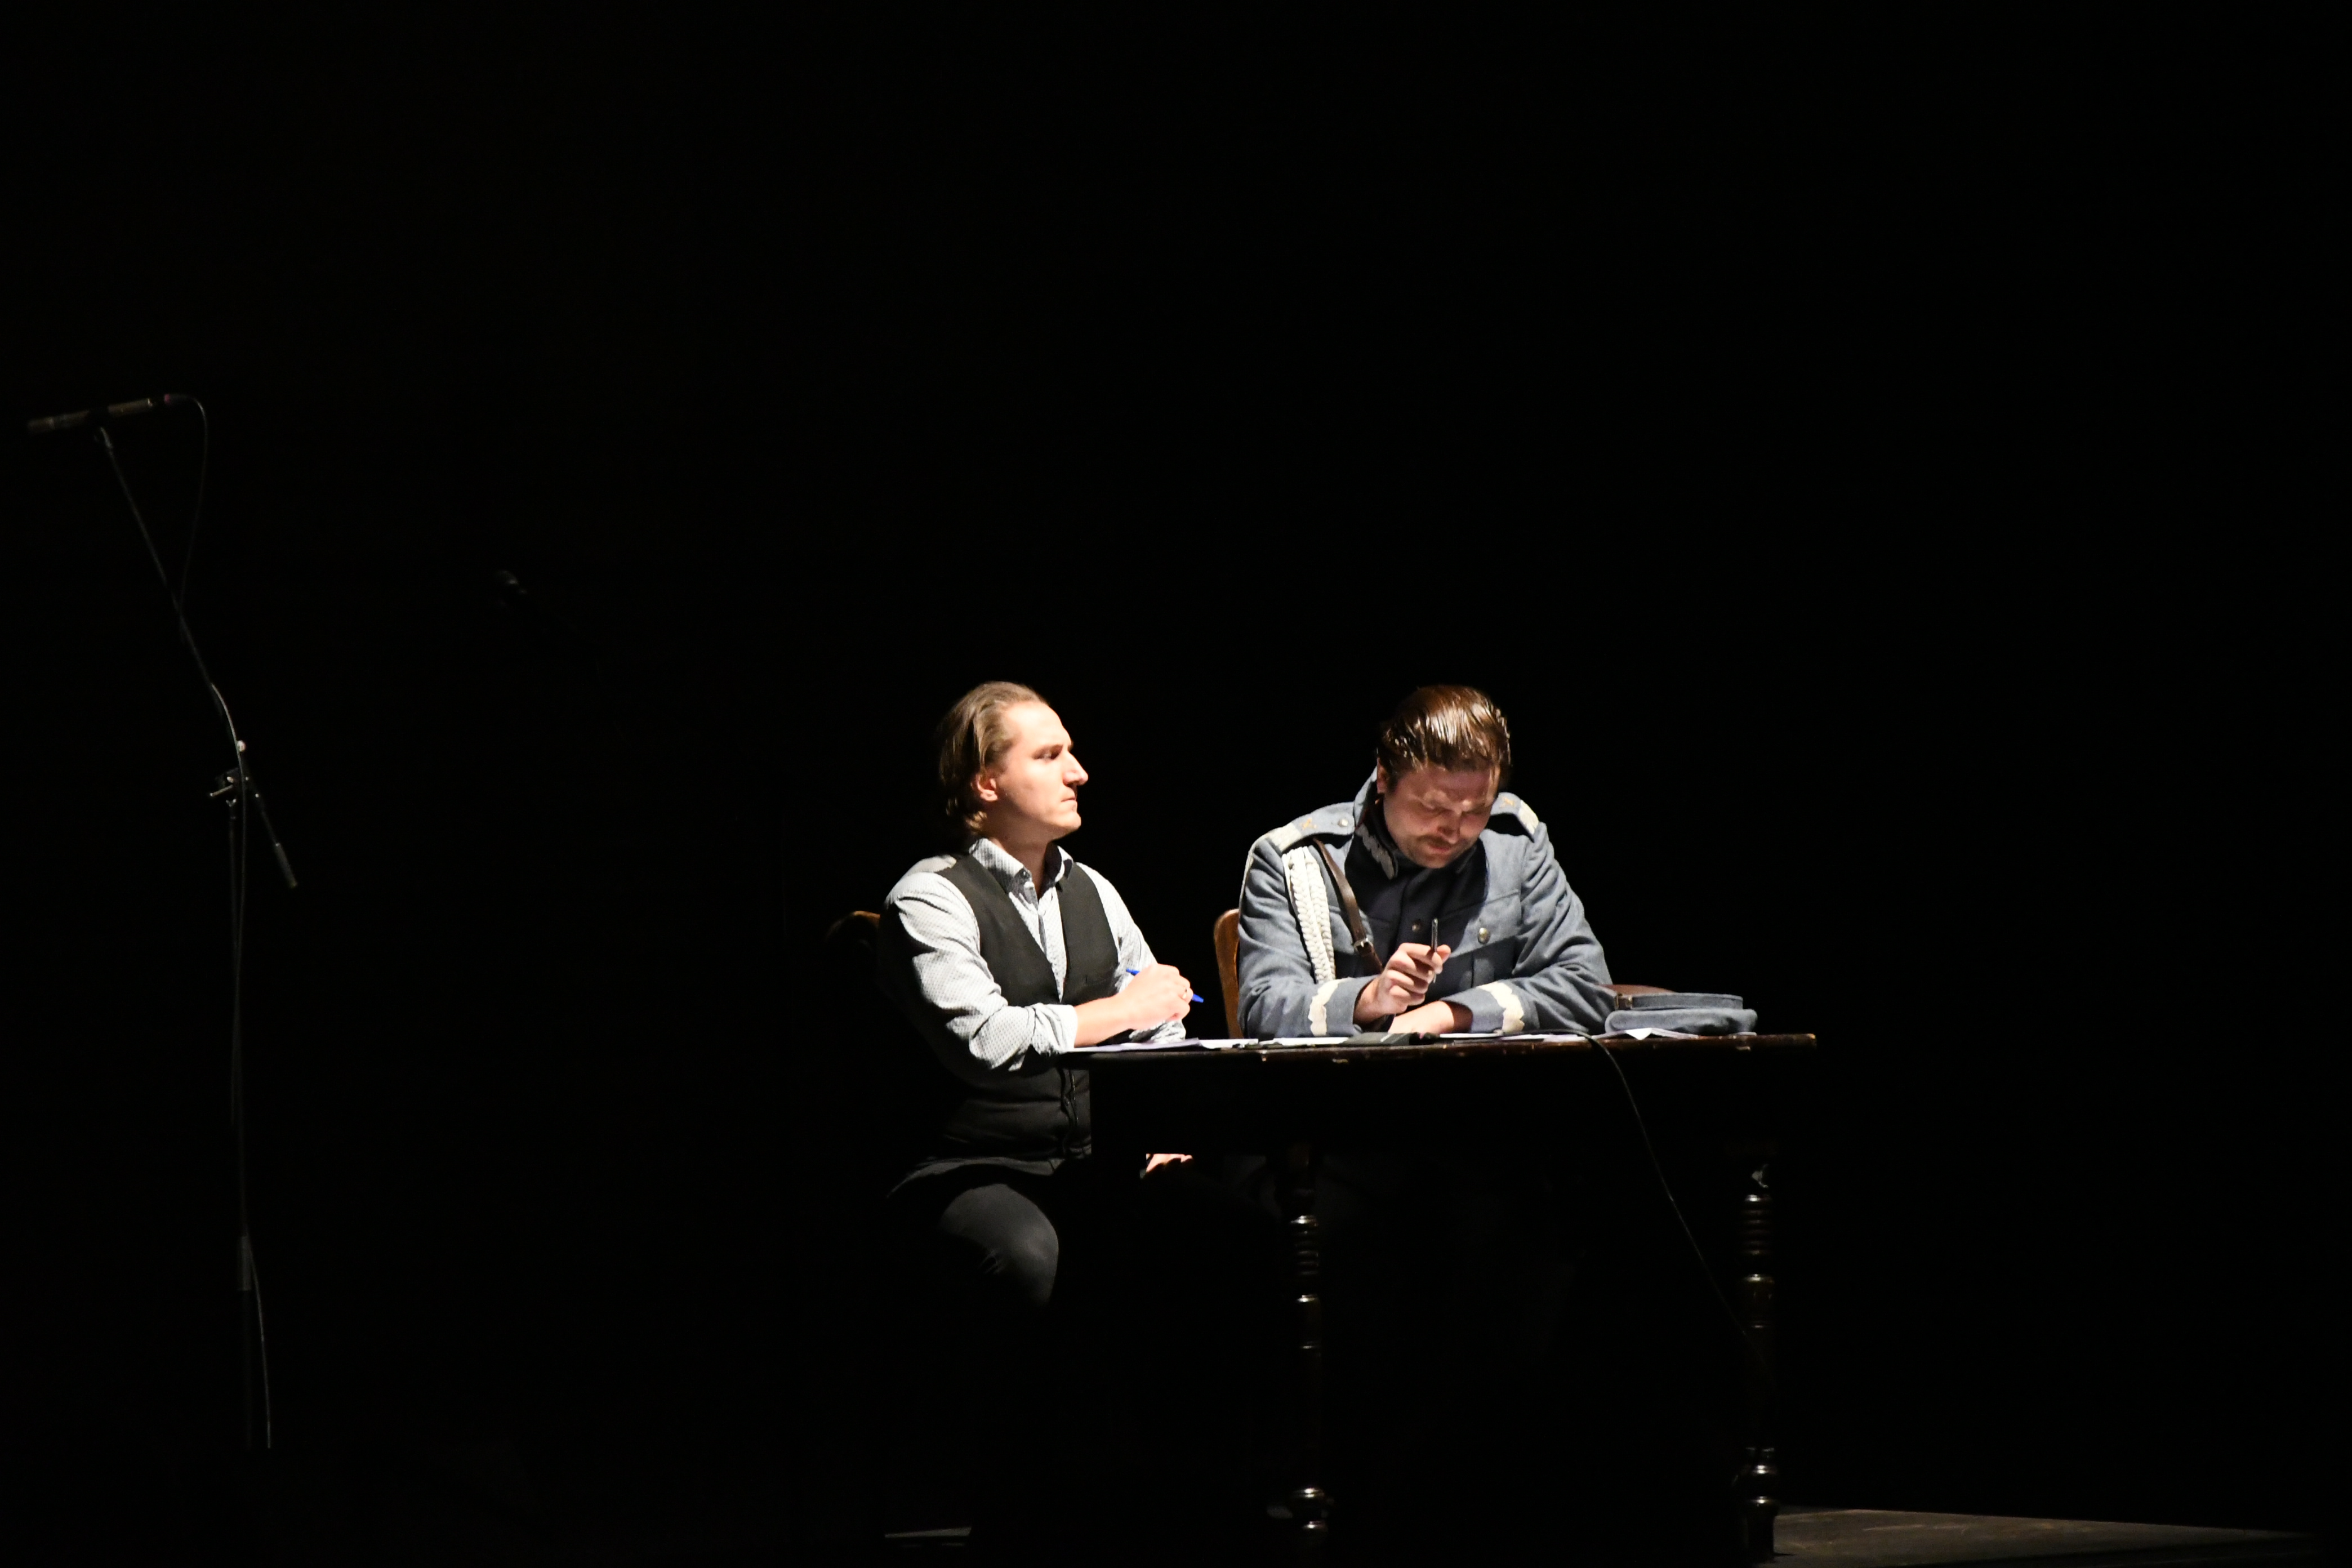 Dwie osoby siedzą przy biurku na scenie.